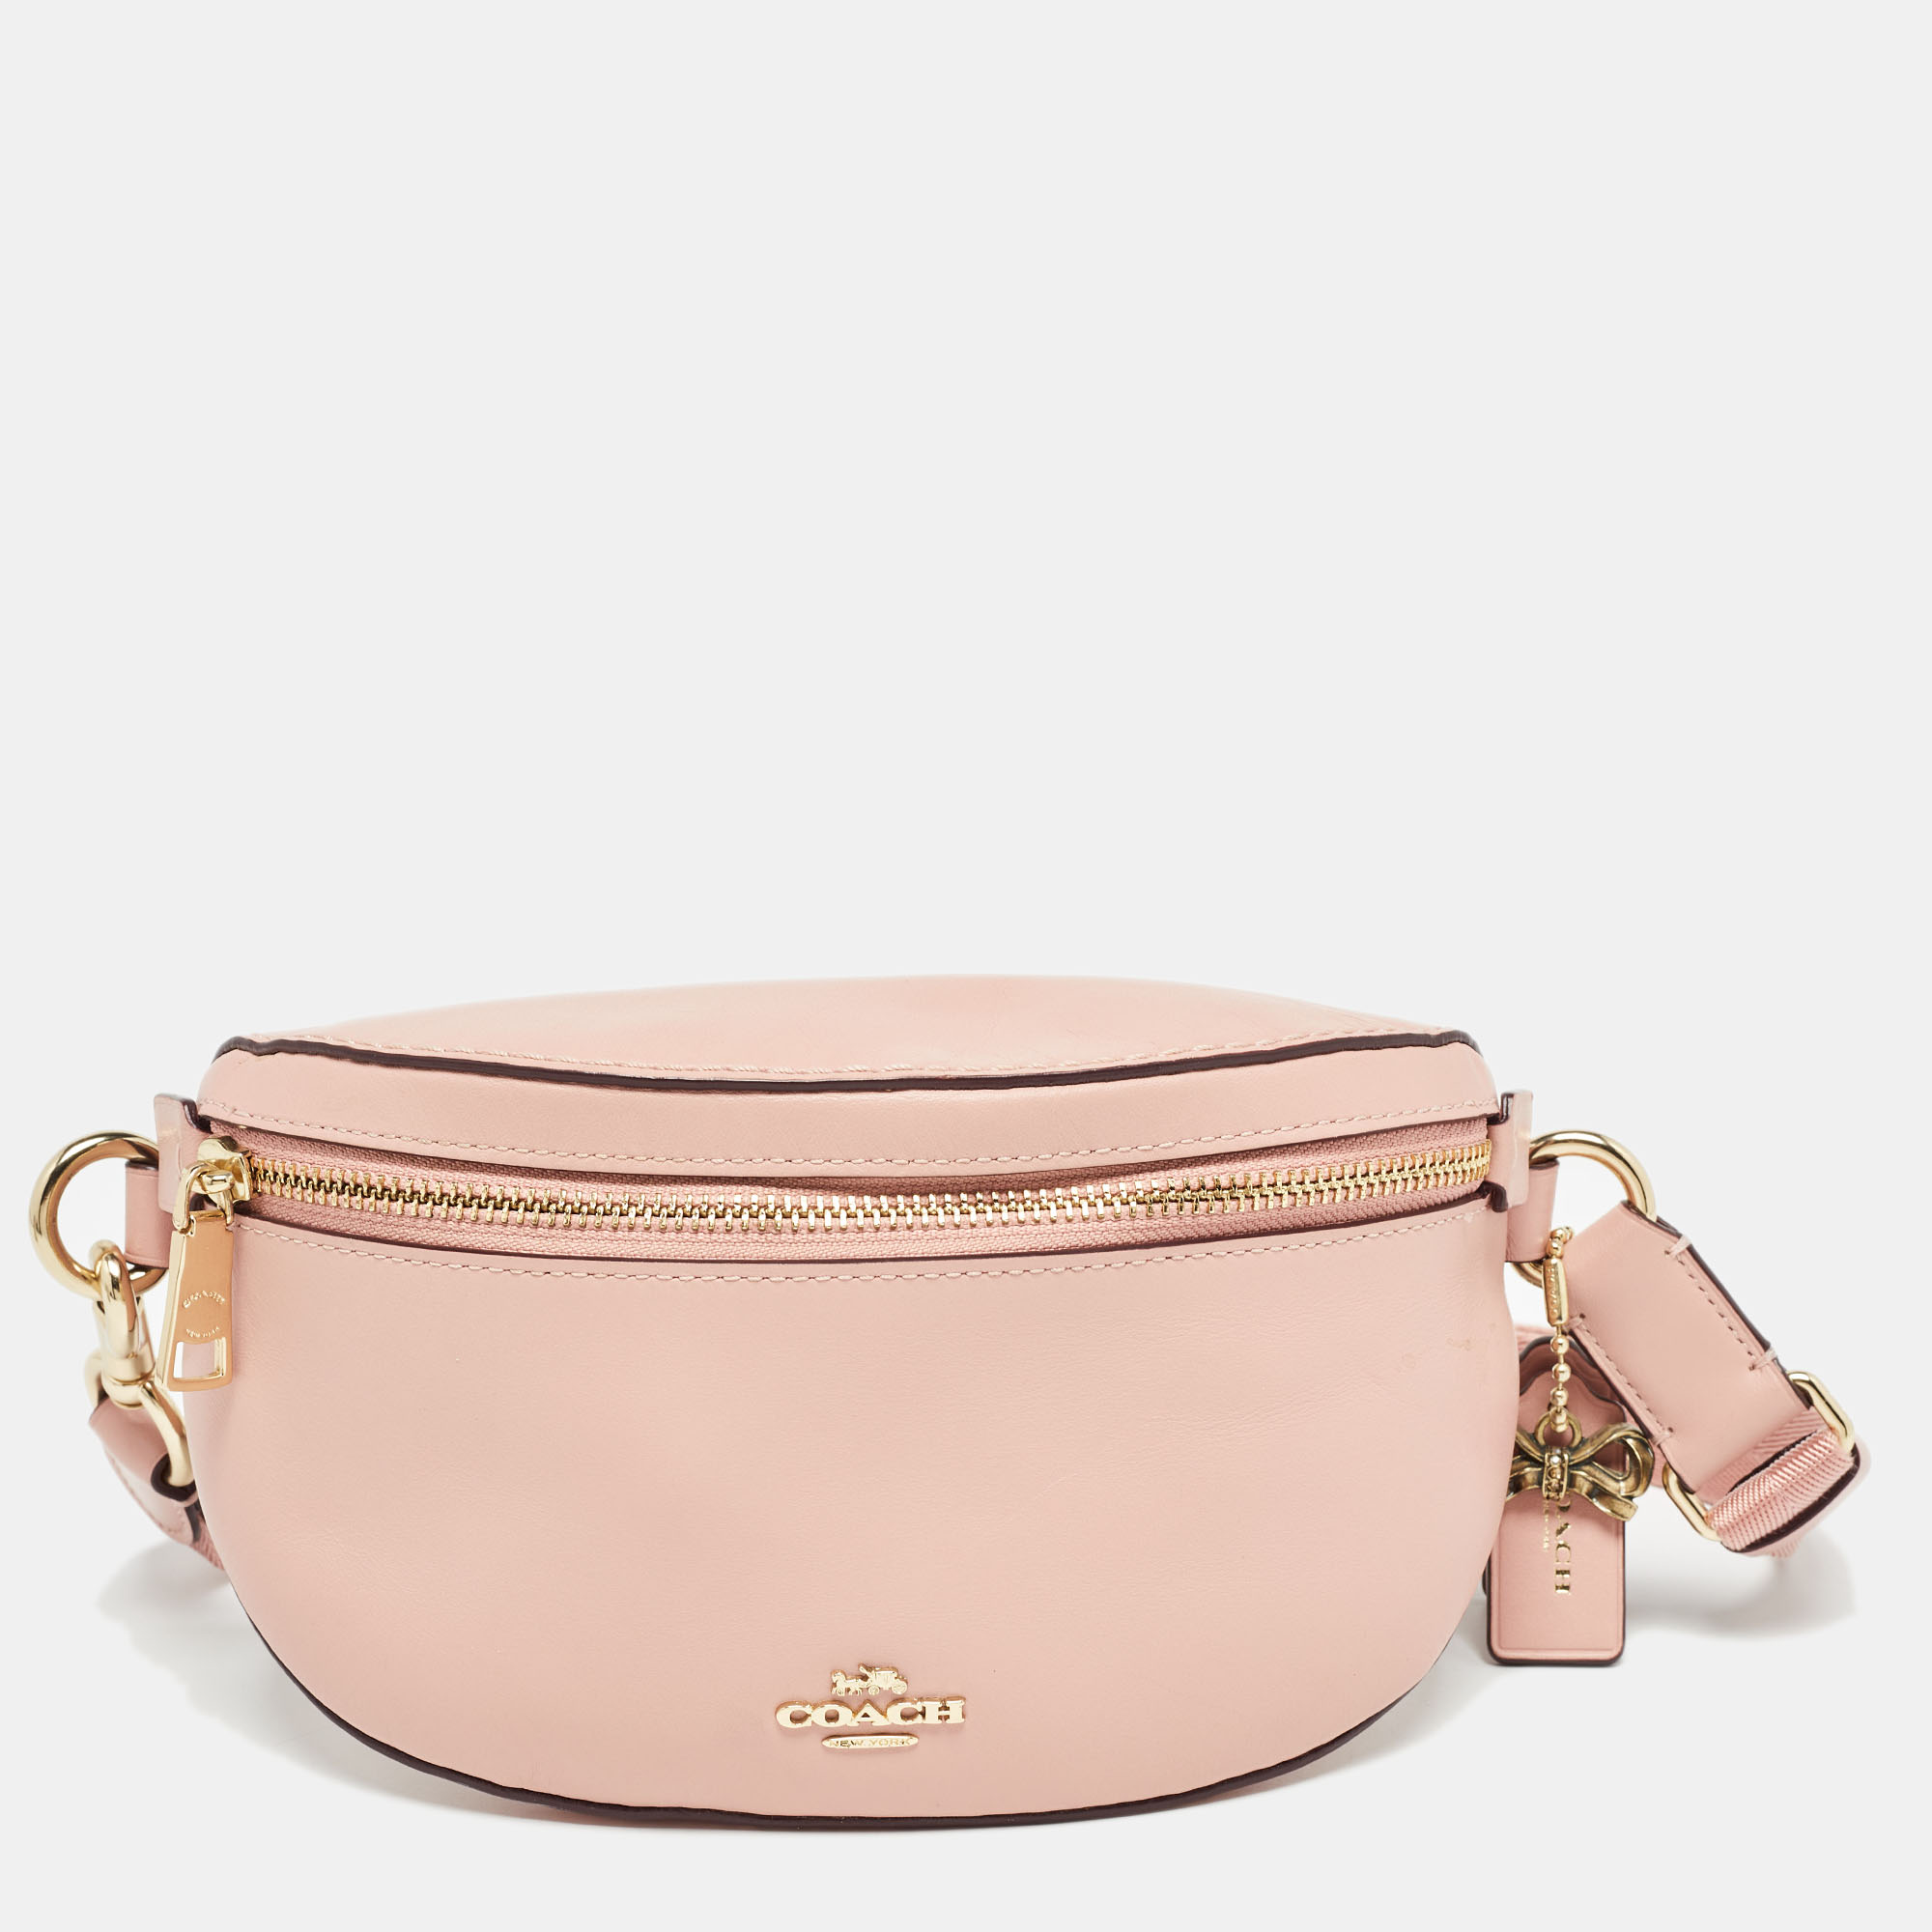 Coach pink leather belt bag